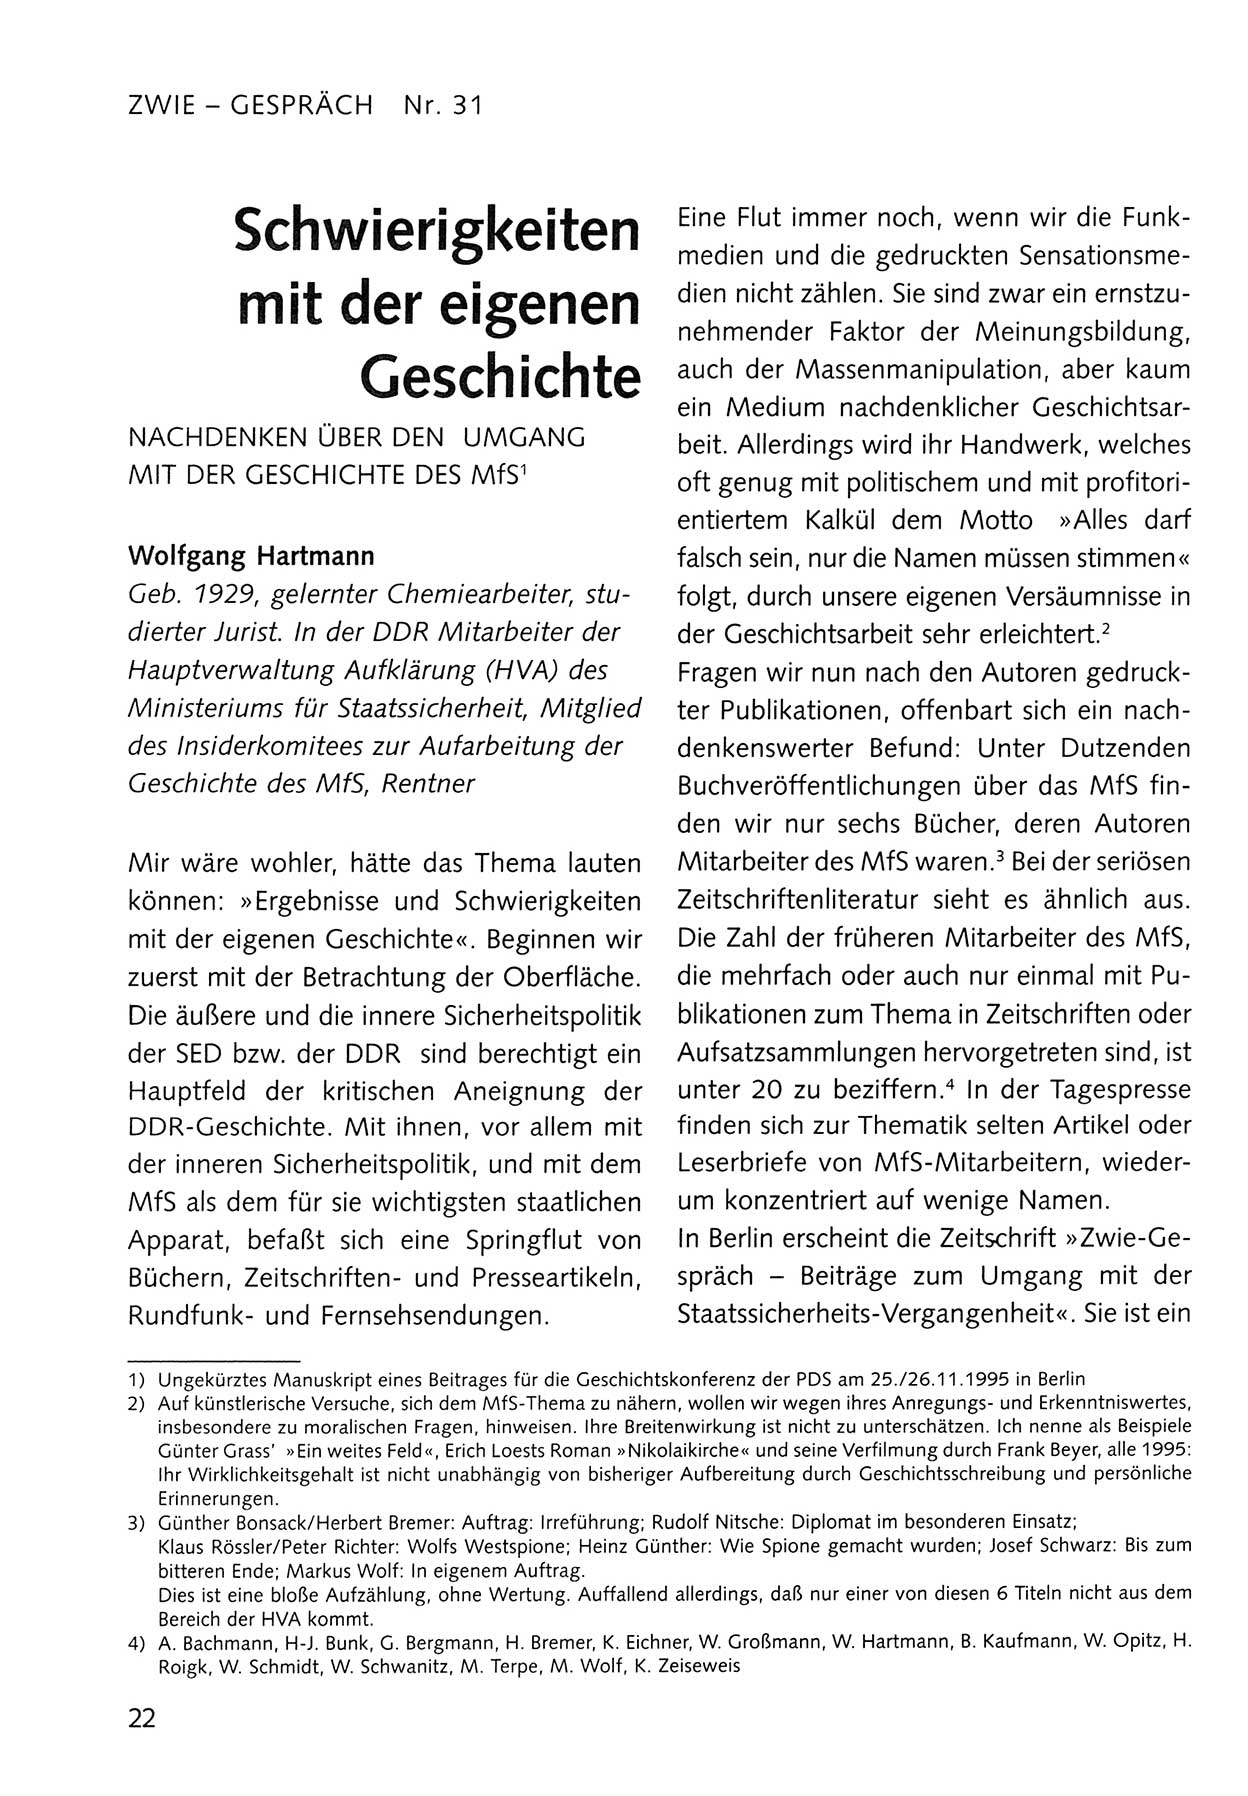 Zwie-Gespräch, Beiträge zum Umgang mit der Staatssicherheits-Vergangenheit [Deutsche Demokratische Republik (DDR)], Ausgabe Nr. 31, Berlin 1995, Seite 22 (Zwie-Gespr. Ausg. 31 1995, S. 22)